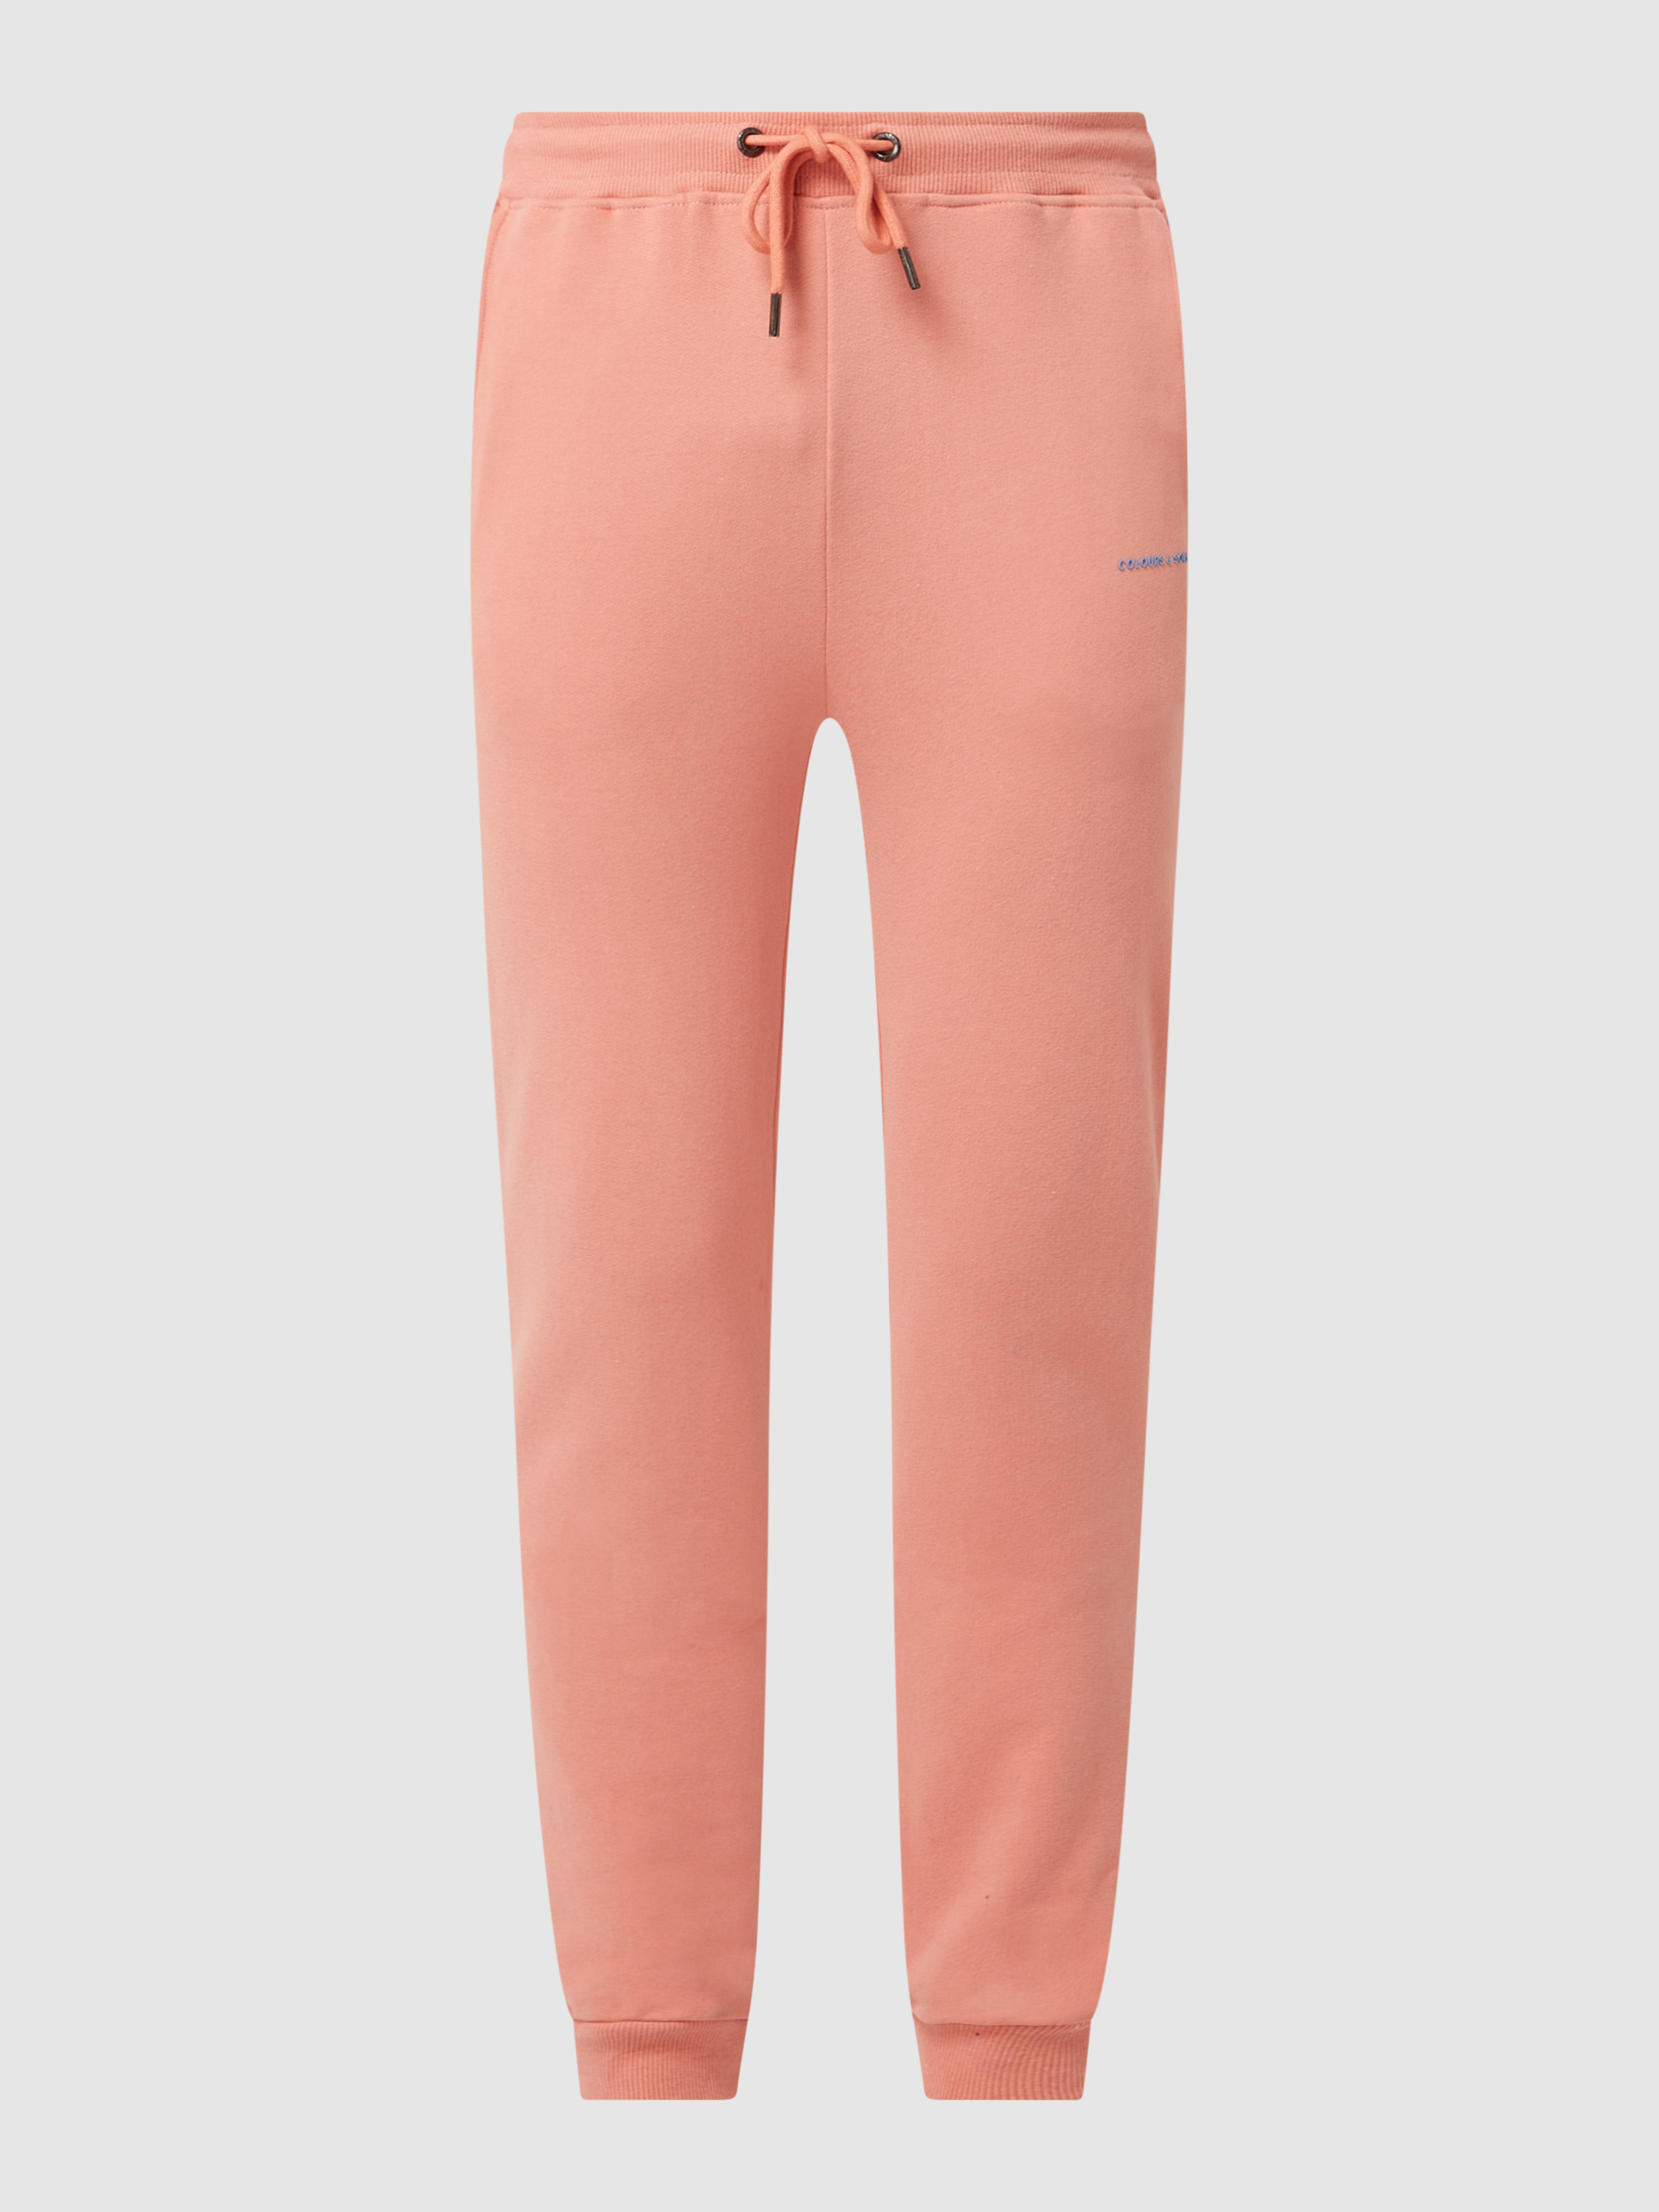 Спортивные брюки мужские Colours & sons 1464633 оранжевые M (доставка из-за рубежа)